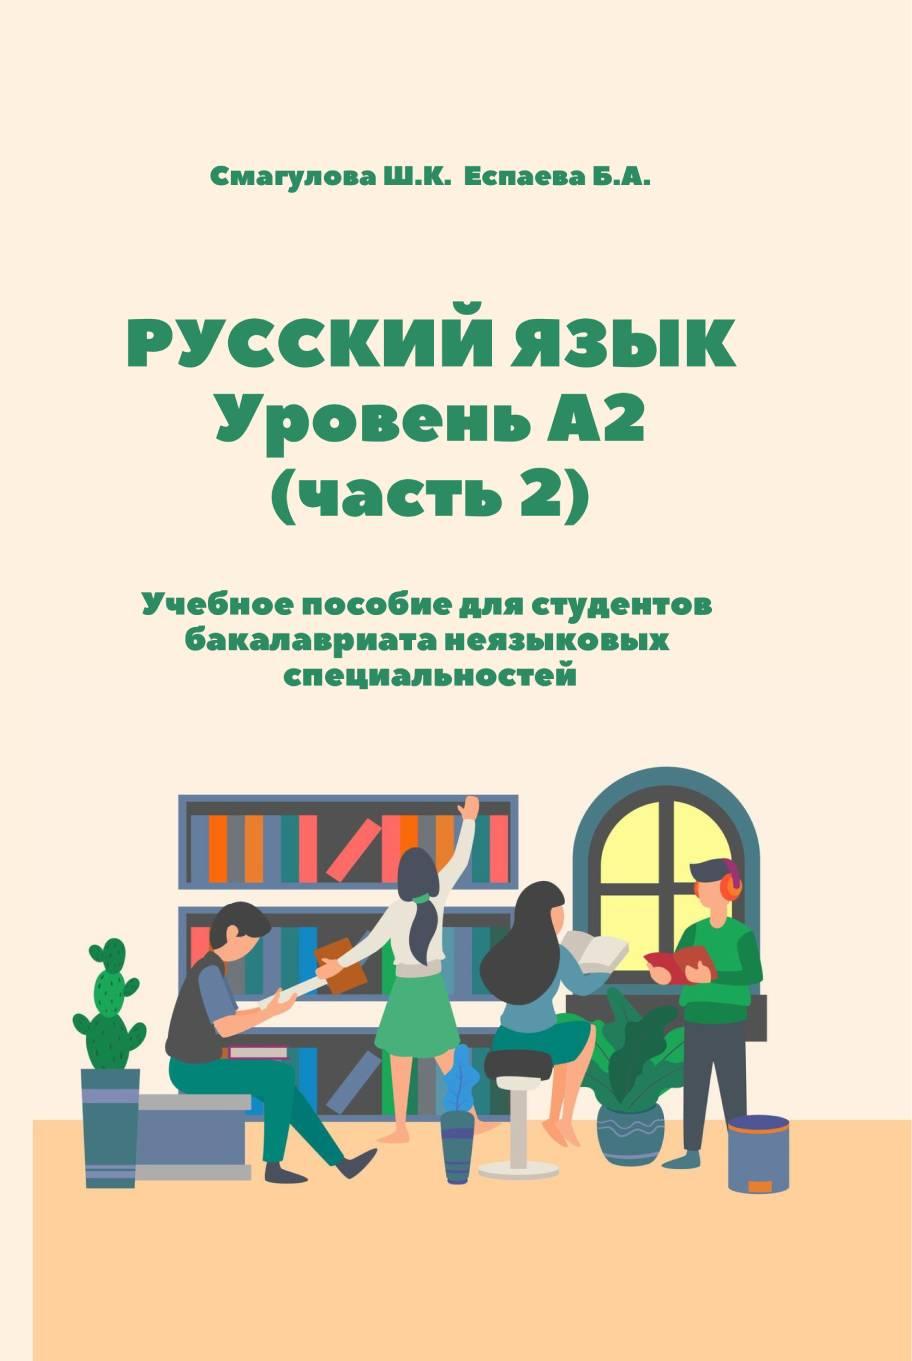 Русский язык: Уровень А2 (часть 2):Учебное пособие для студентов бакалавриата неязыковых специальностей.